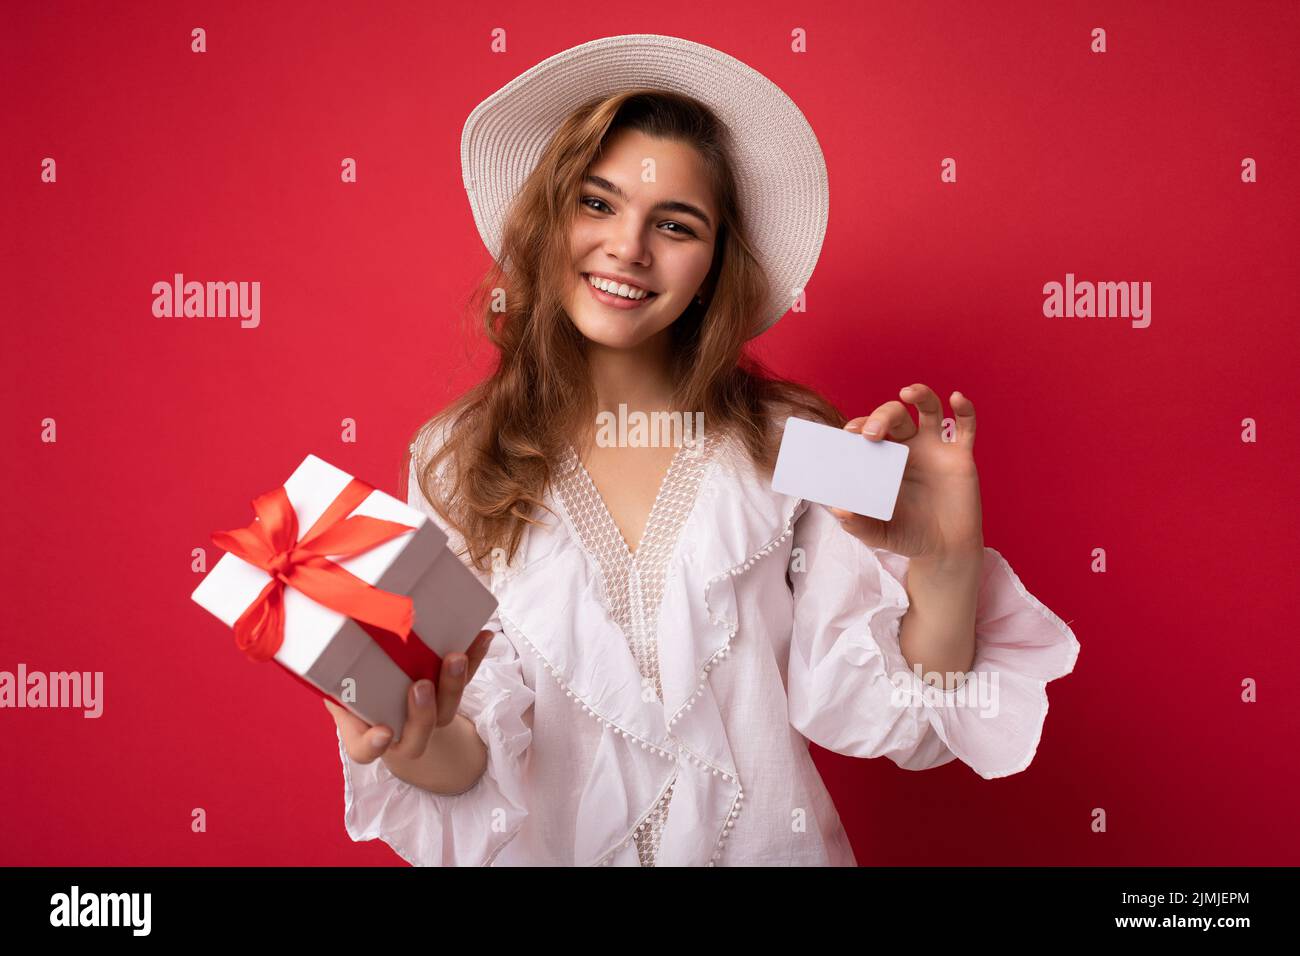 Ritratto di donna allegra positiva alla moda in formalwear con scatola regalo e carta di credito guardando la macchina fotografica isolato sul rosso Foto Stock